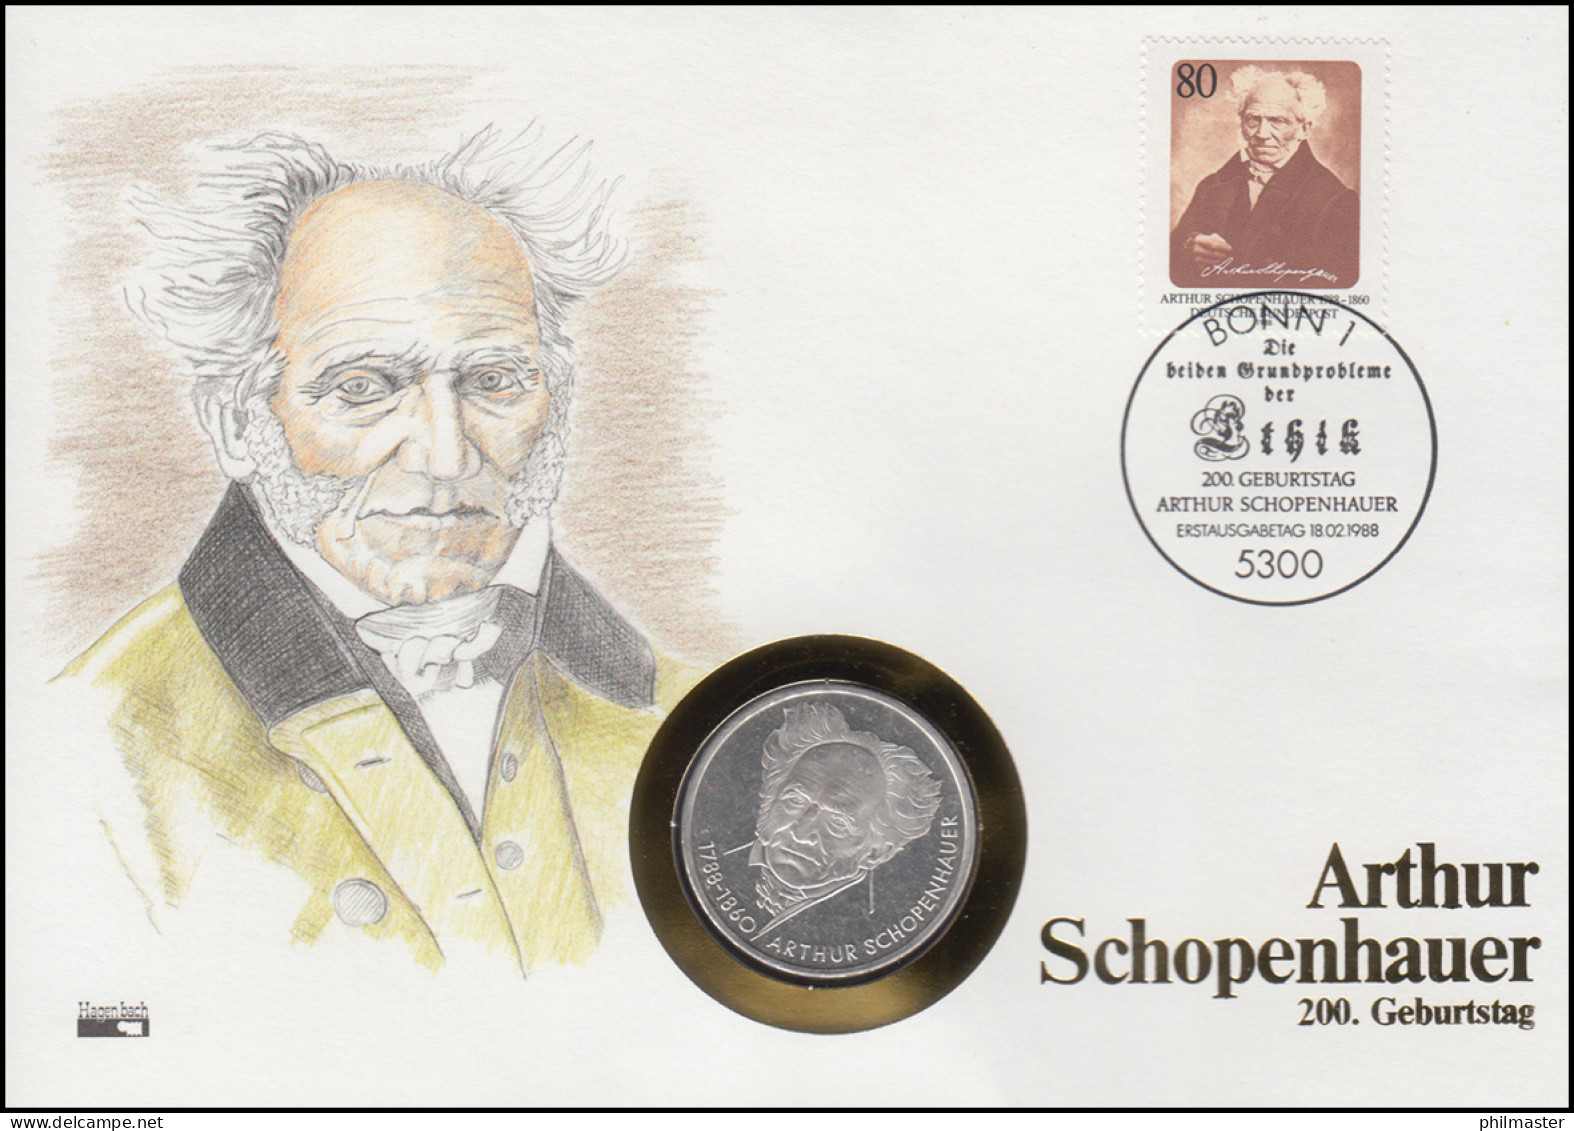 Numisbrief Arthur Schopenhauer, 10 DM / 80 Pf., ESST Bonn 18.2.1988 - Enveloppes Numismatiques